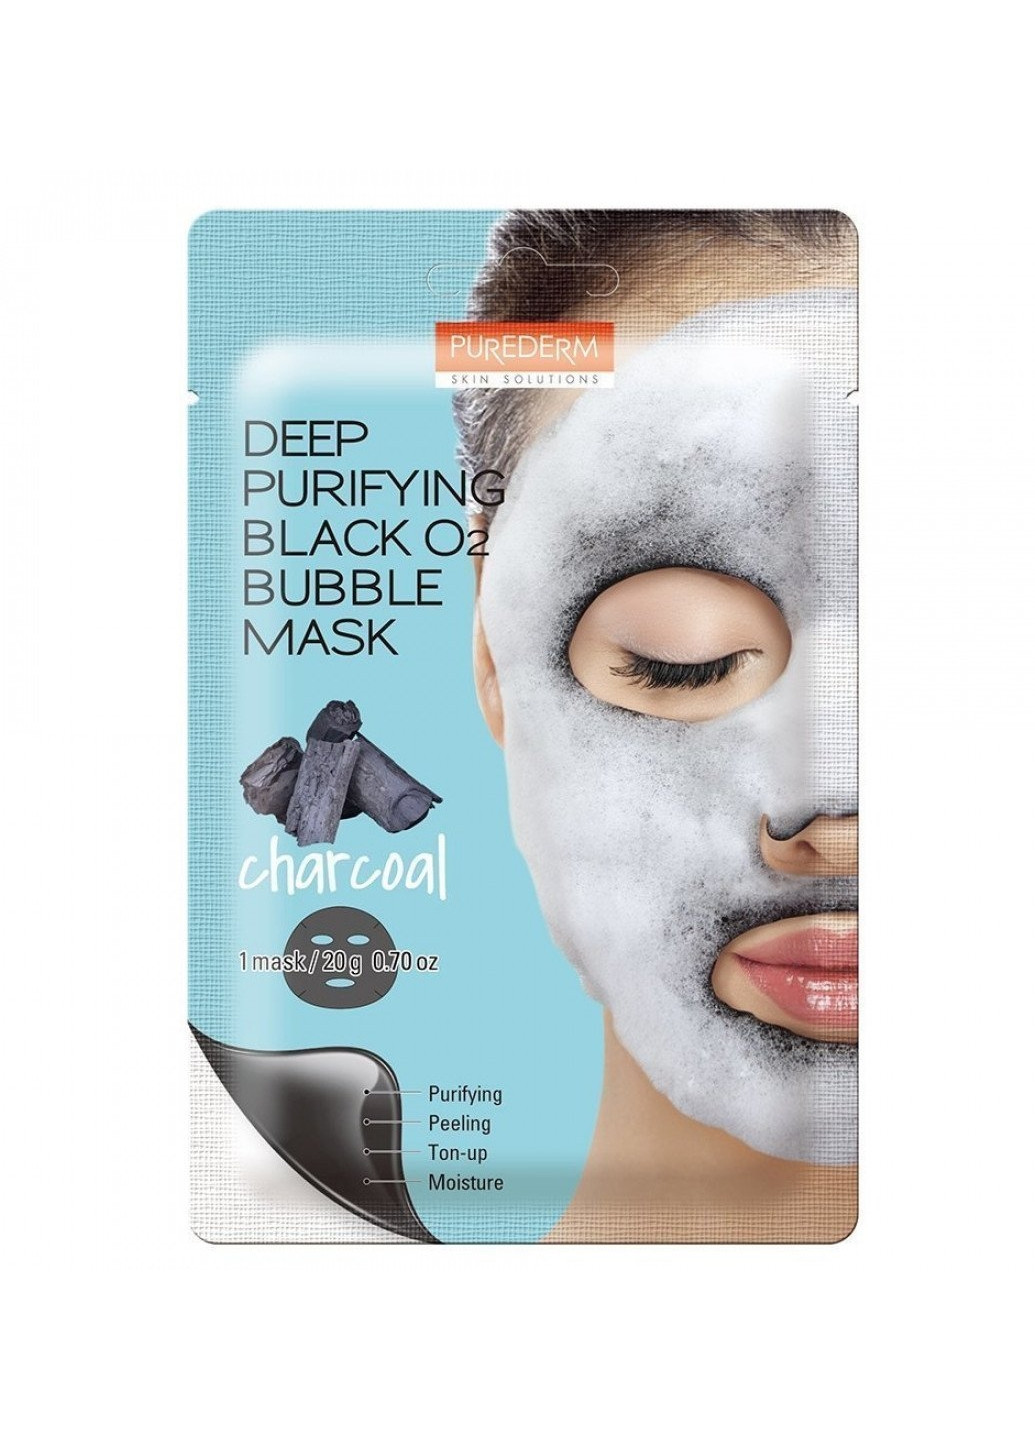 Маска DEEP PURIFYING BLACK O2 BUBBLE MASK CHARCOAL киснева маска на основі вугілля для глибокого очищення шкіри Purederm (253916559)